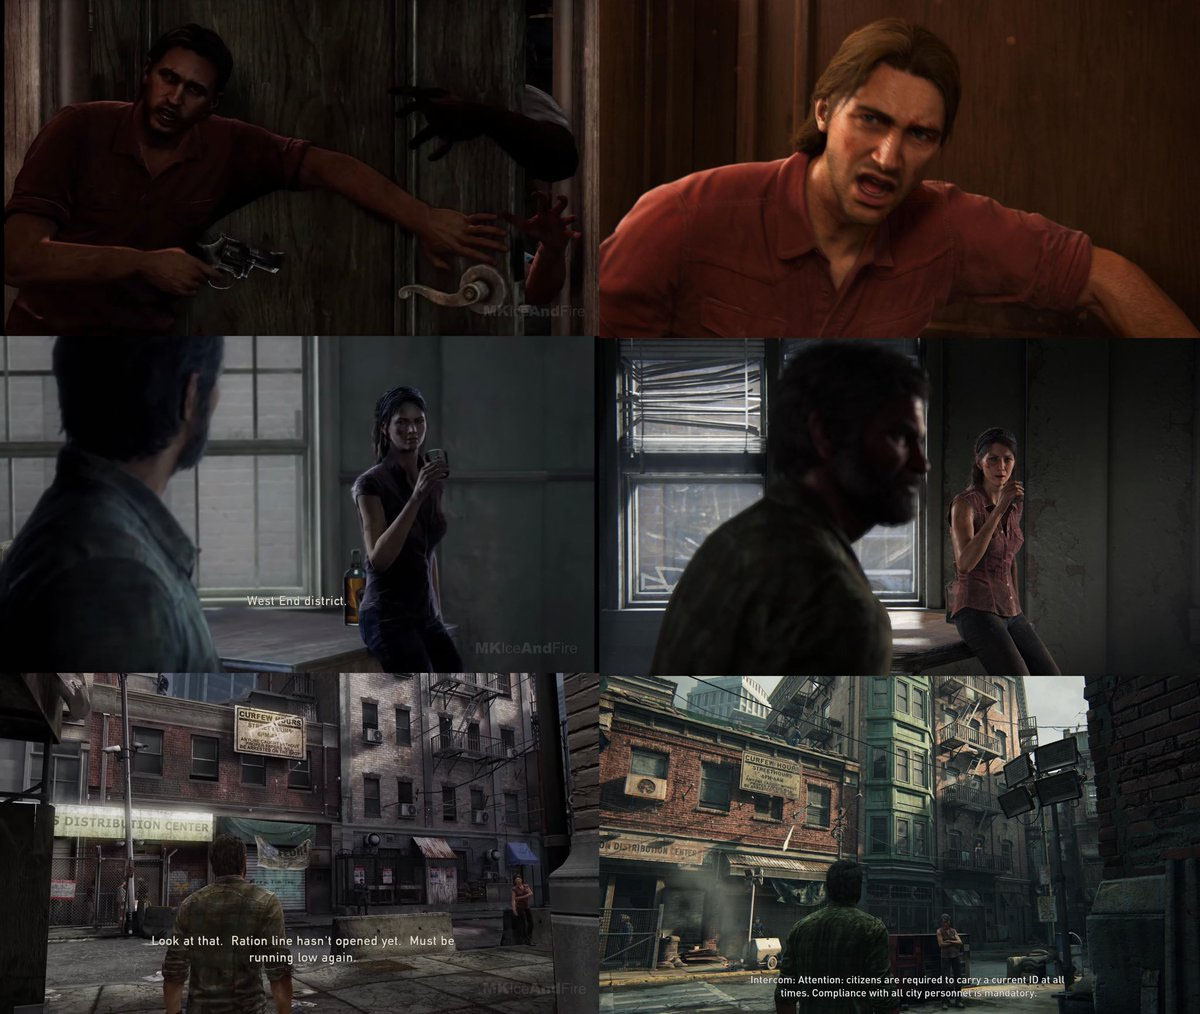 Vazam imagens e cutscene da introdução do remake de The Last of Us 2